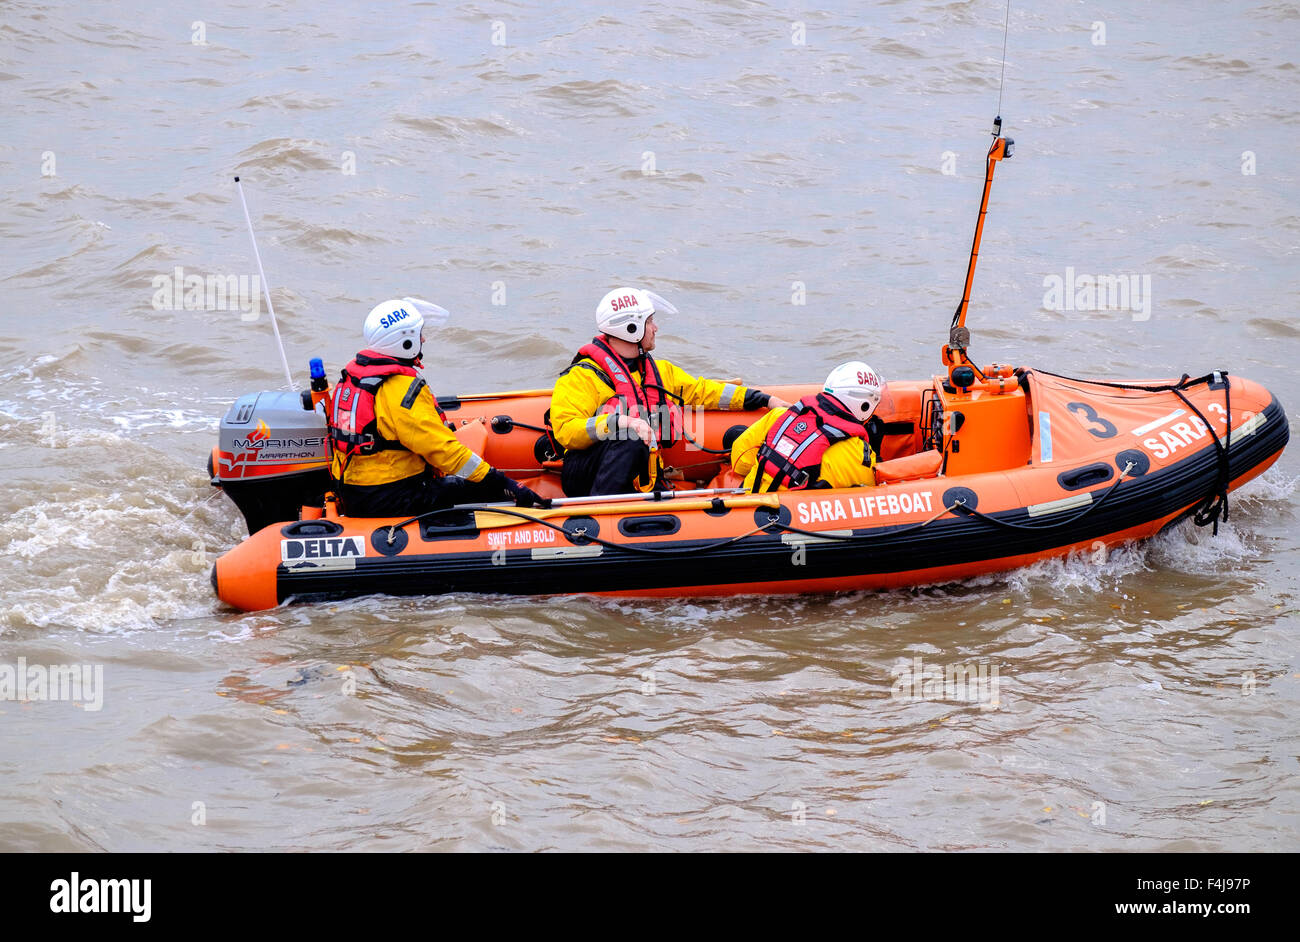 Bote Salvavidas en el río Severn en Beachley Gloucestershire, Inglaterra. El buque pertenece a Sara, la Asociación de Rescate Área Severn. Foto de stock